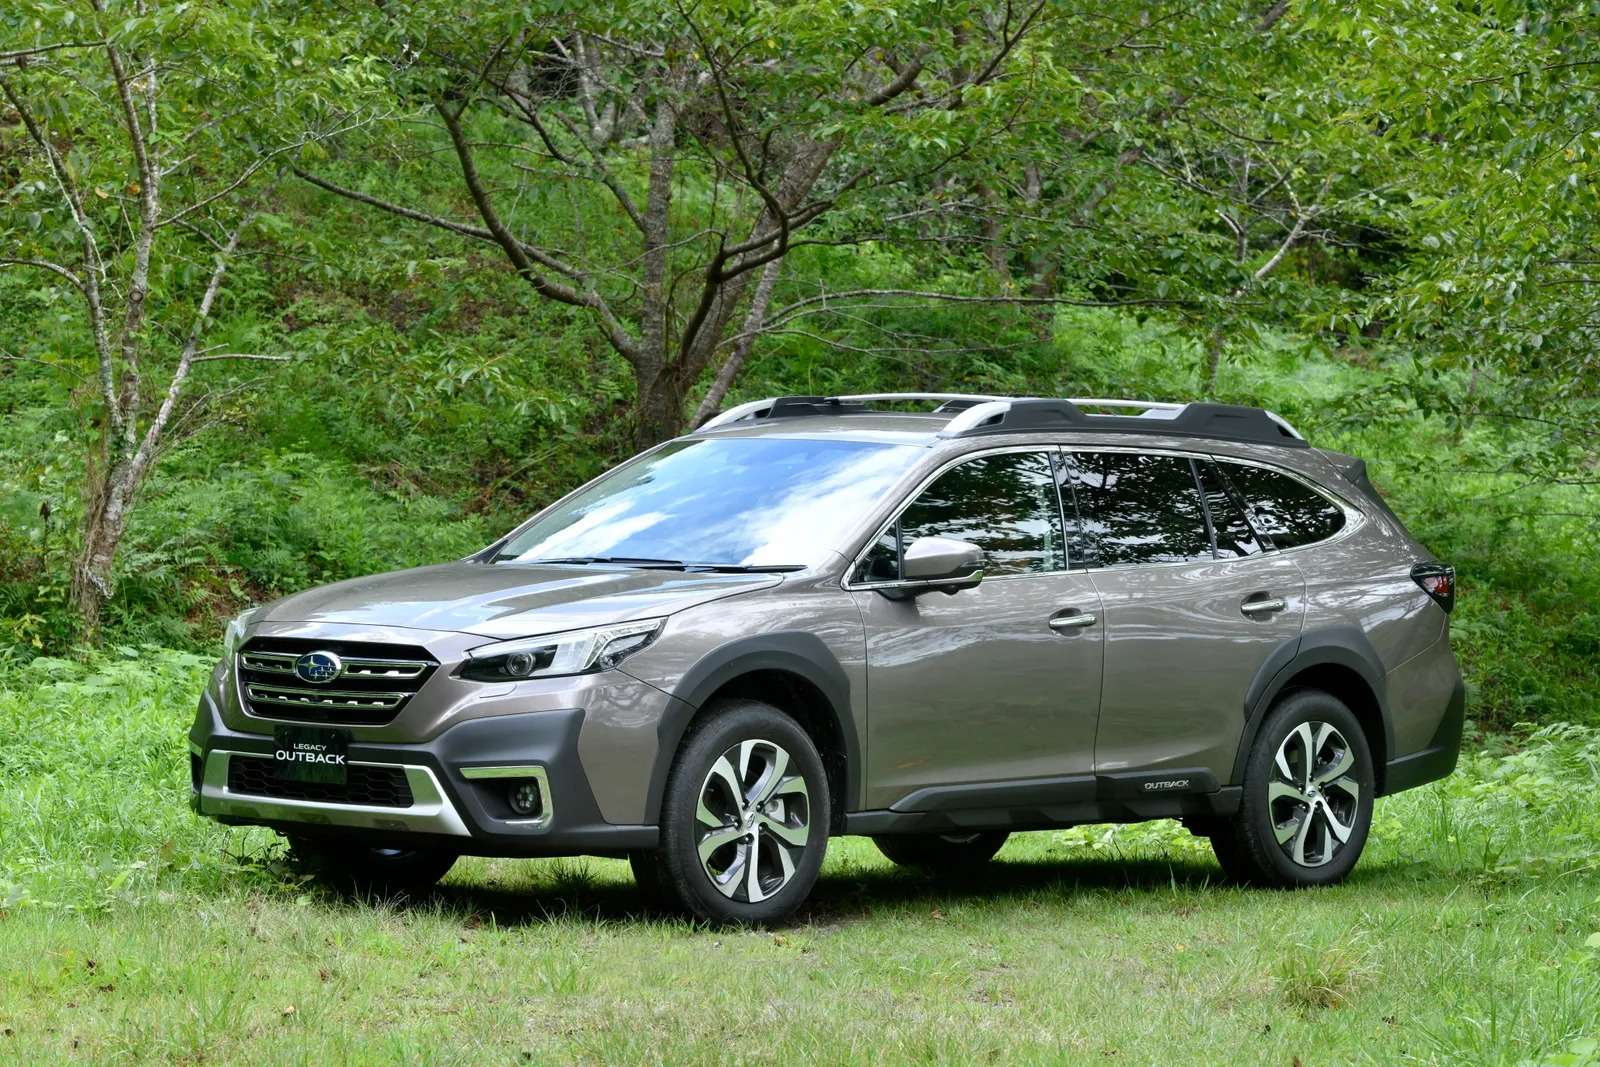 2015 Subaru Outback Review